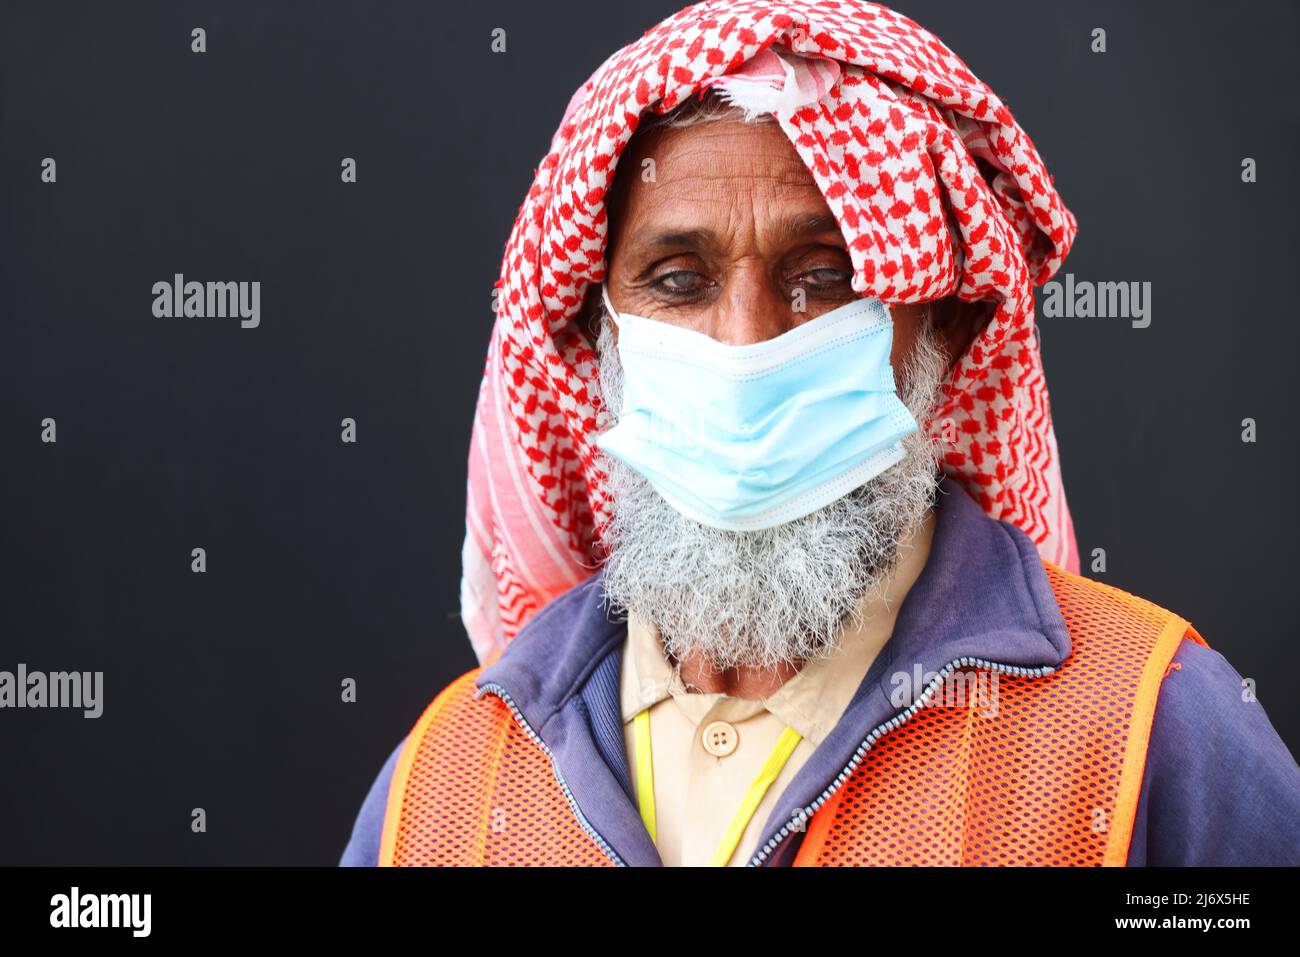 Arbeit. Handwerker, Dynamik, Energie, Baustelle, Dubai, Arbeiter,  moderne Baustelle Porträt eines Arbeiters aus Indien oder Pakistan Stock Photo